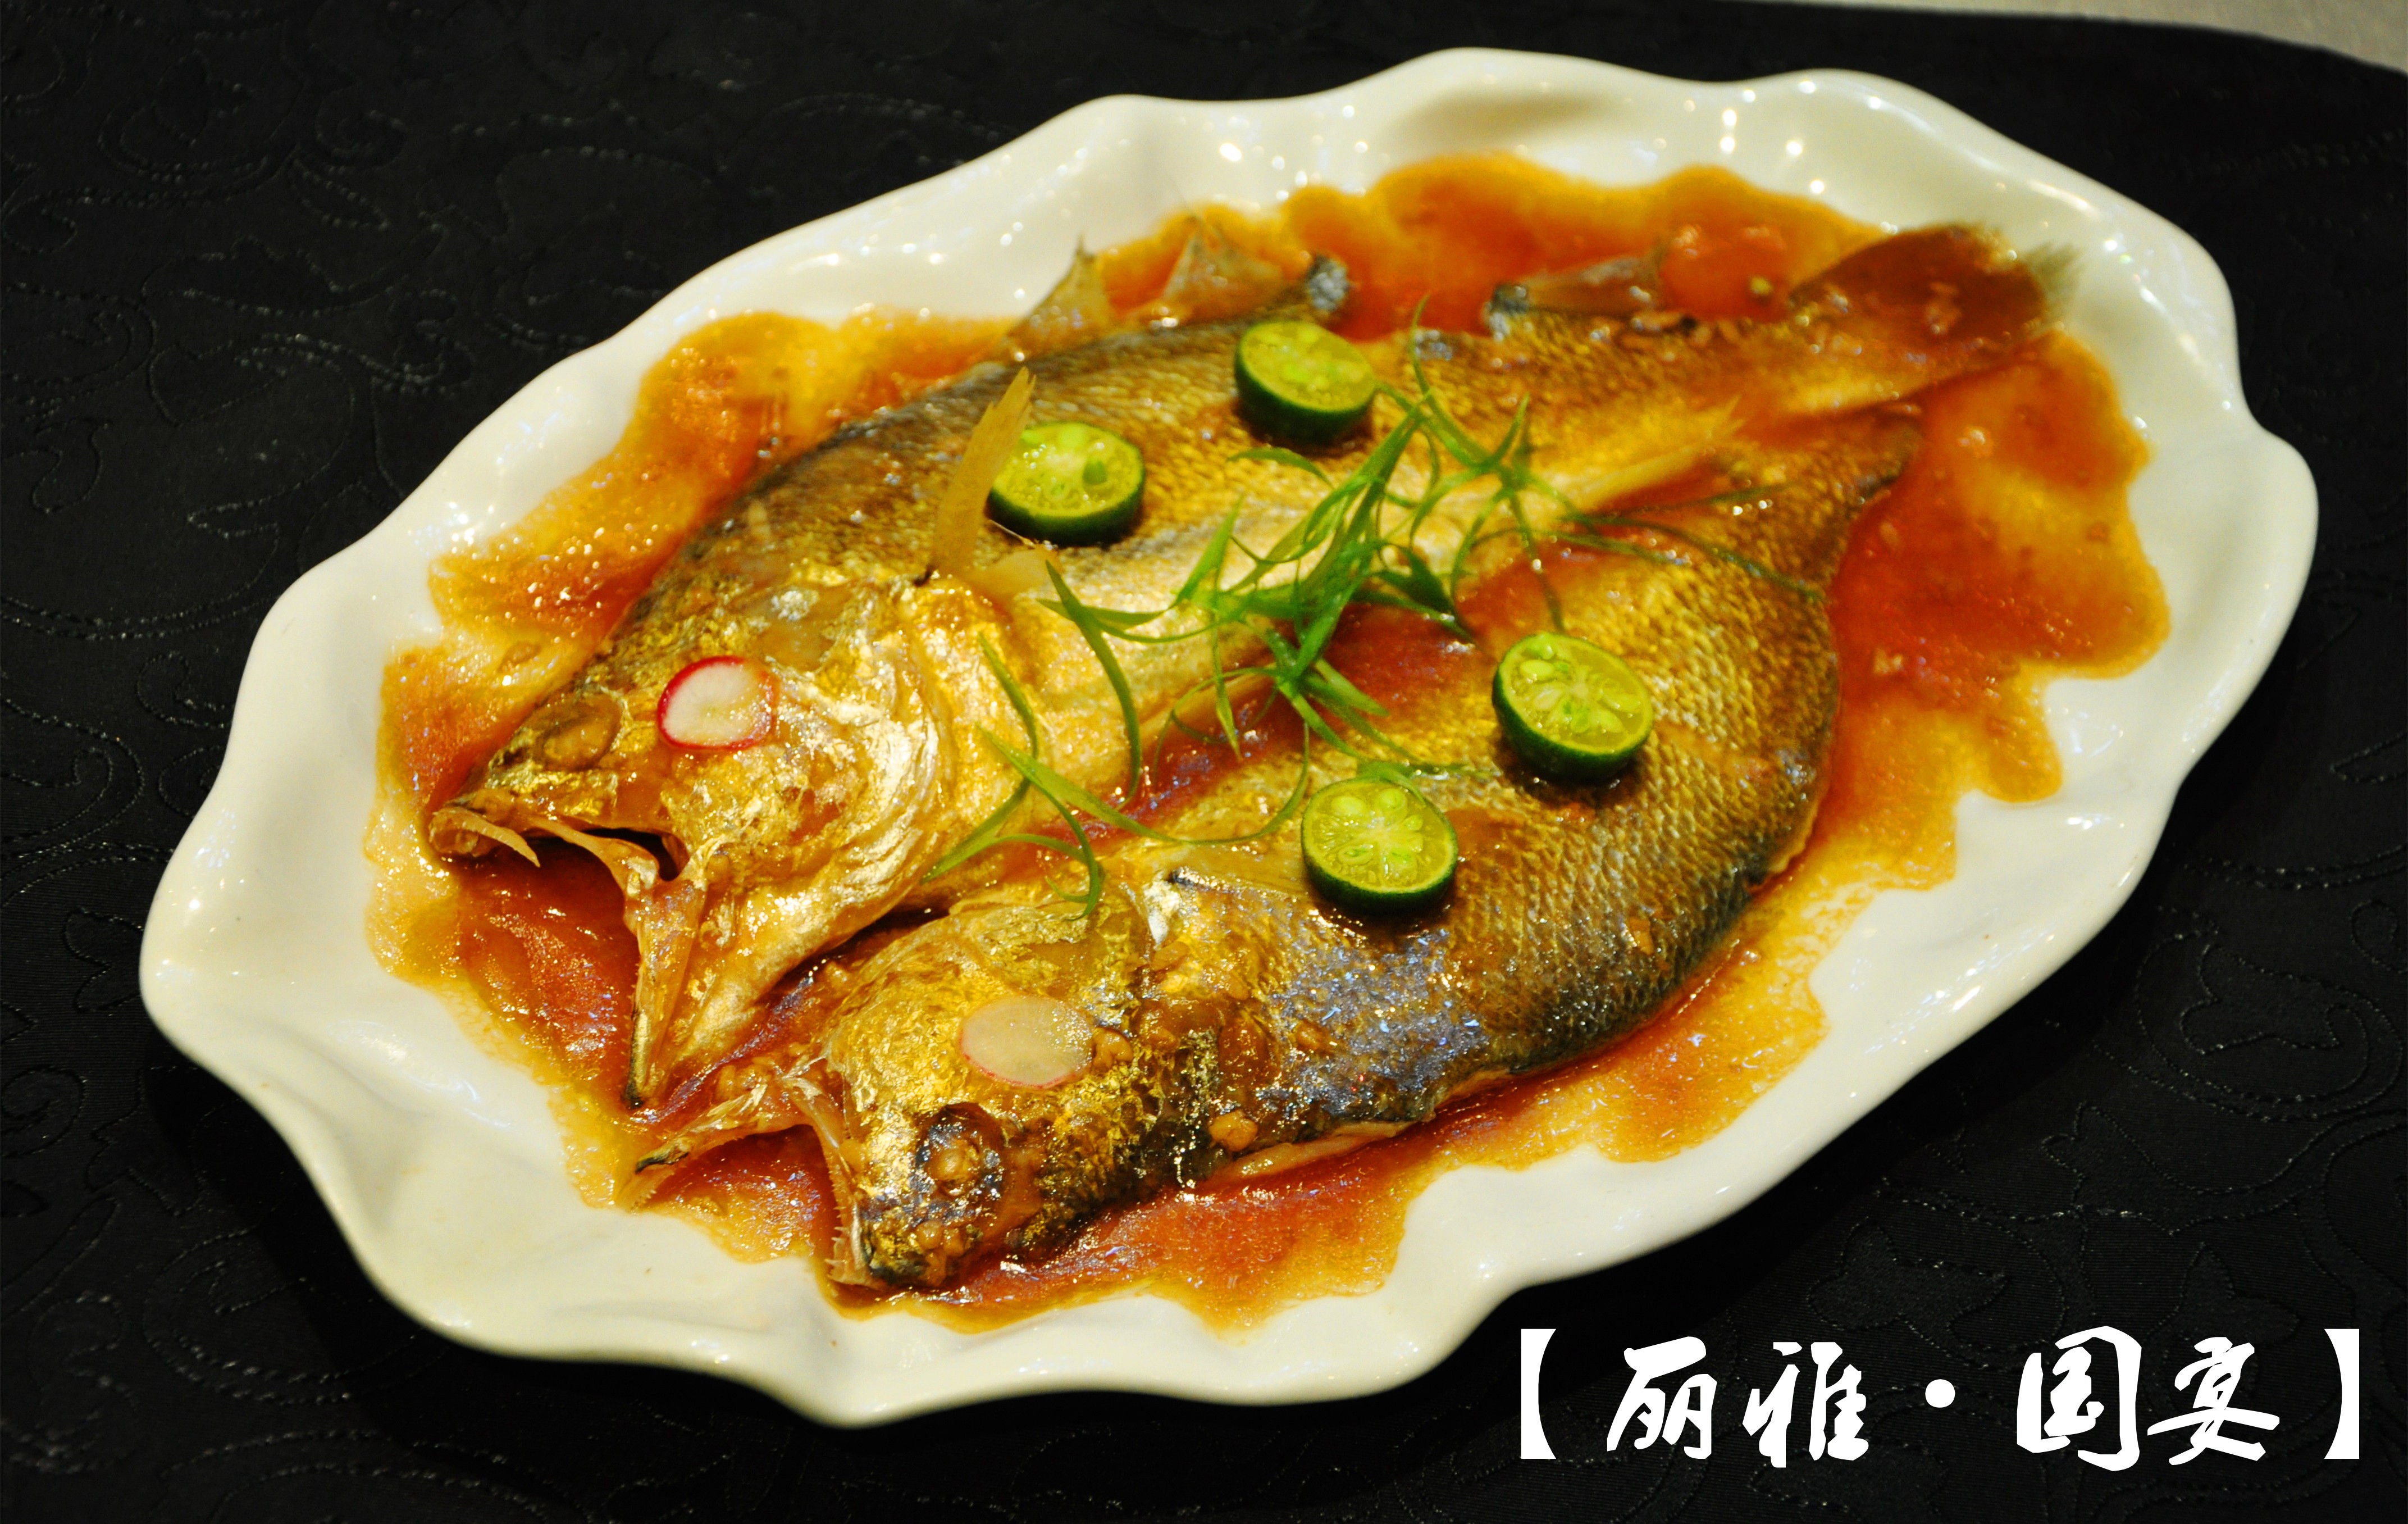 秋季吃鱼正当时,丽雅国宴邀您品尝美味黄鱼